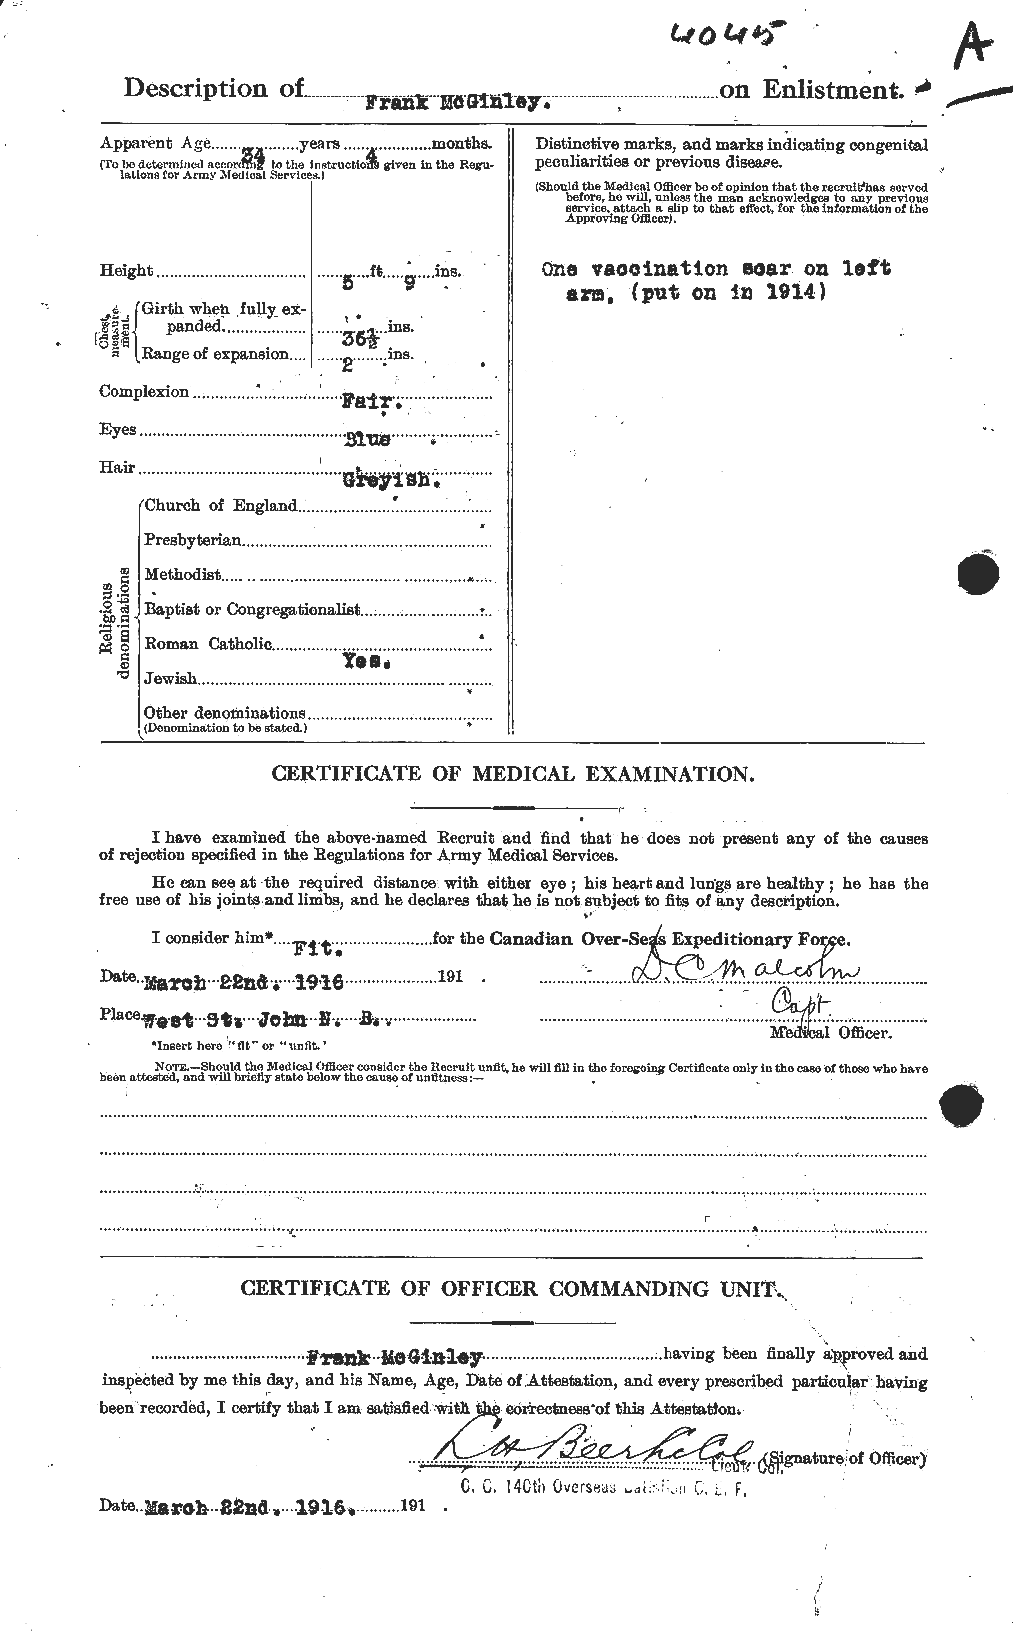 Dossiers du Personnel de la Première Guerre mondiale - CEC 526313b